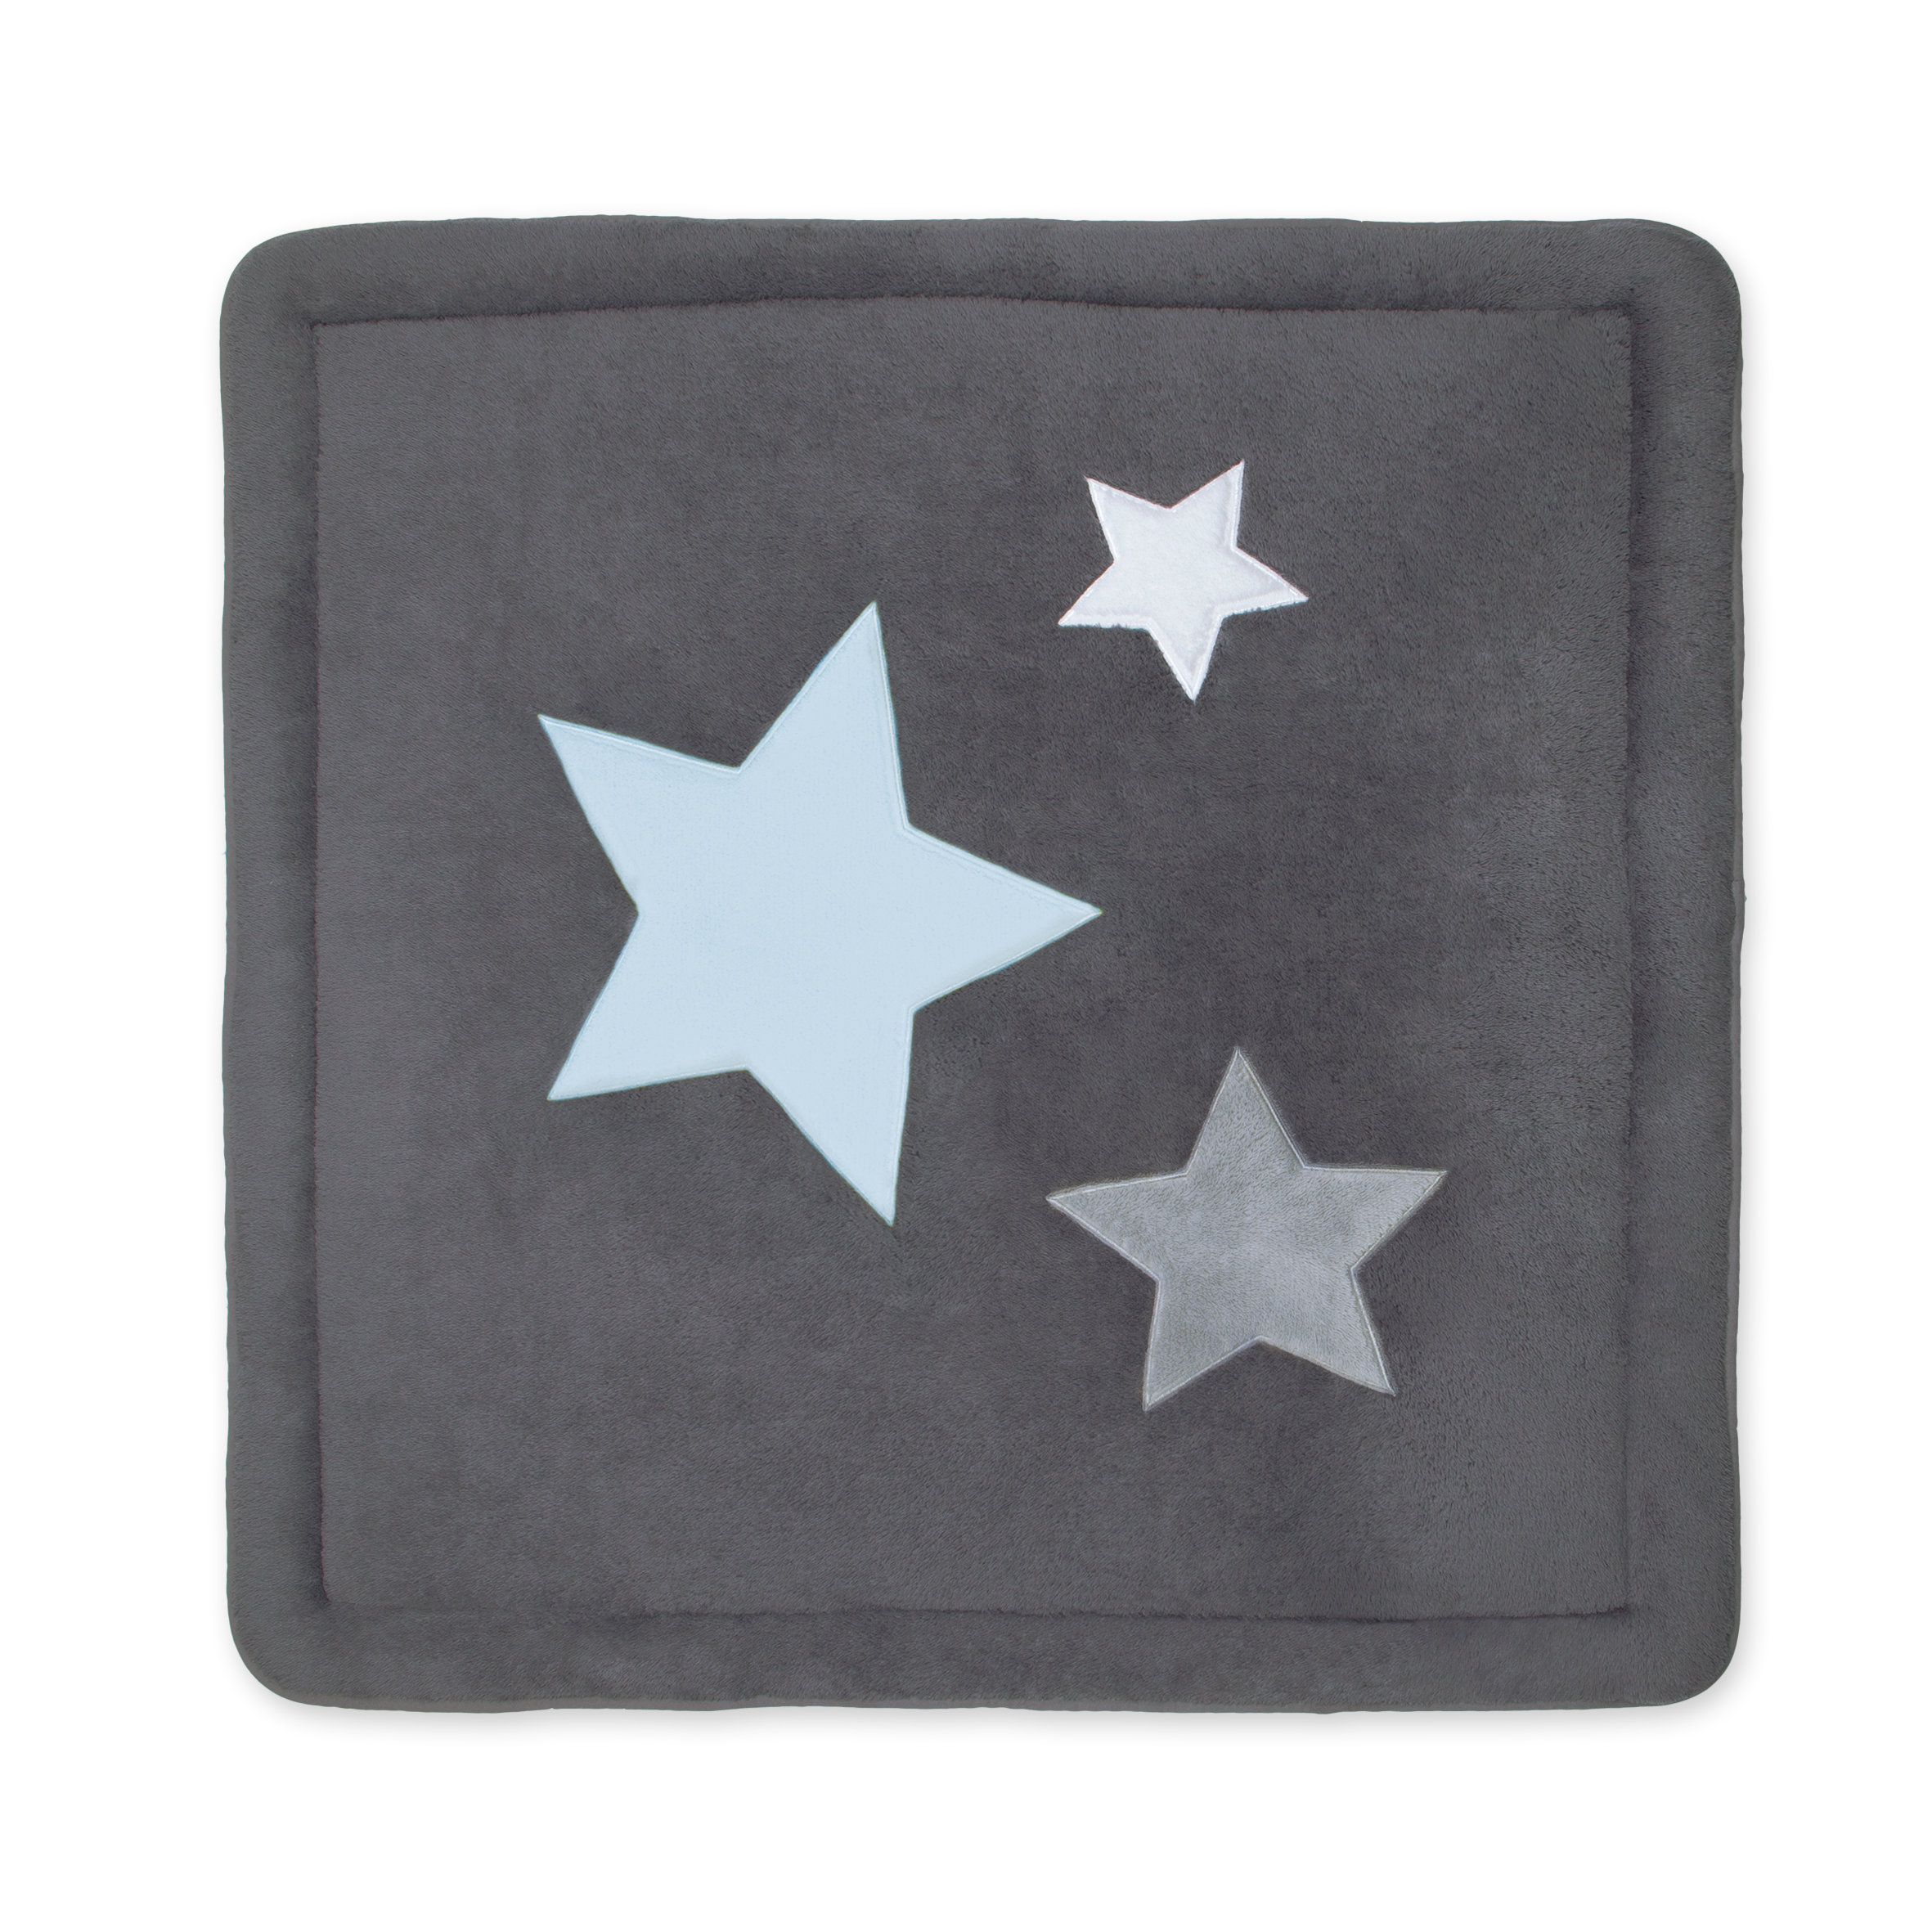 Laufstalleinlage Krabbeldecke Pady softy + terry 100x100cm STARB Little stars print pingu